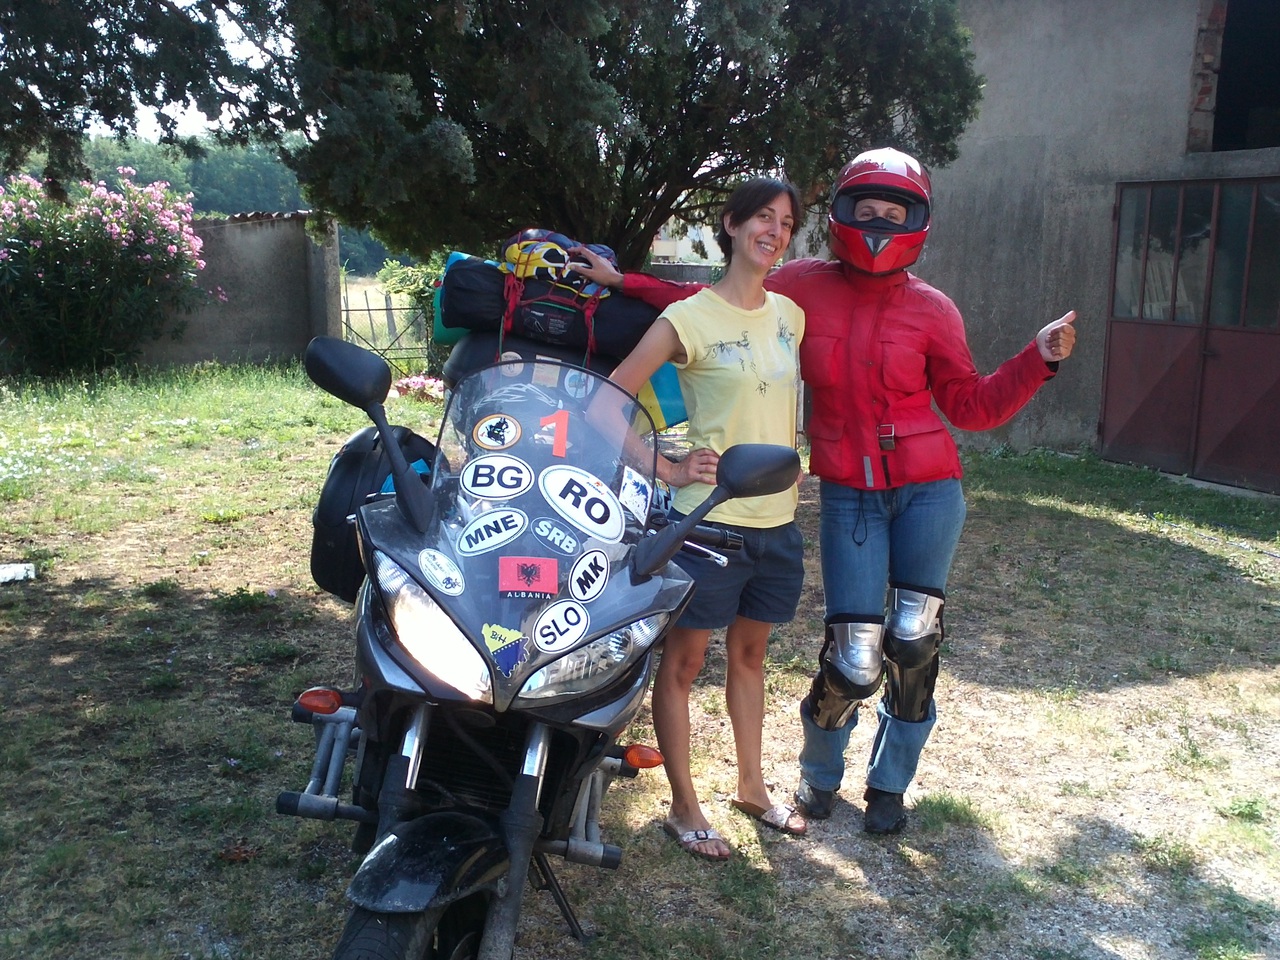 Прохват по Северной Италии на мотоцикле